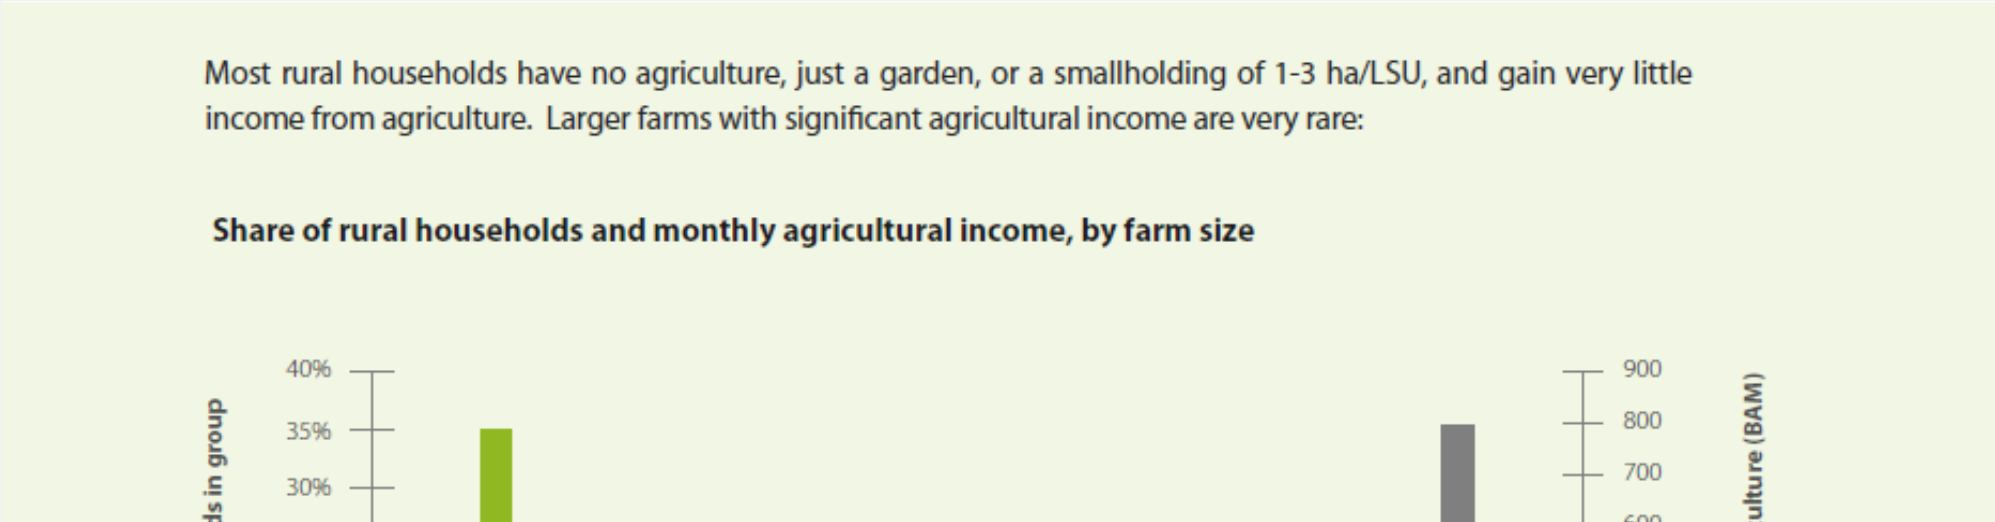 Anche Secondo UNDP (2012) in Bosnia Erzegovina gran parte delle famiglie non sono agricoltori, hanno un orto o un campo di dimensioni ridotte, e ricavano molto poco in termini di reddito dall